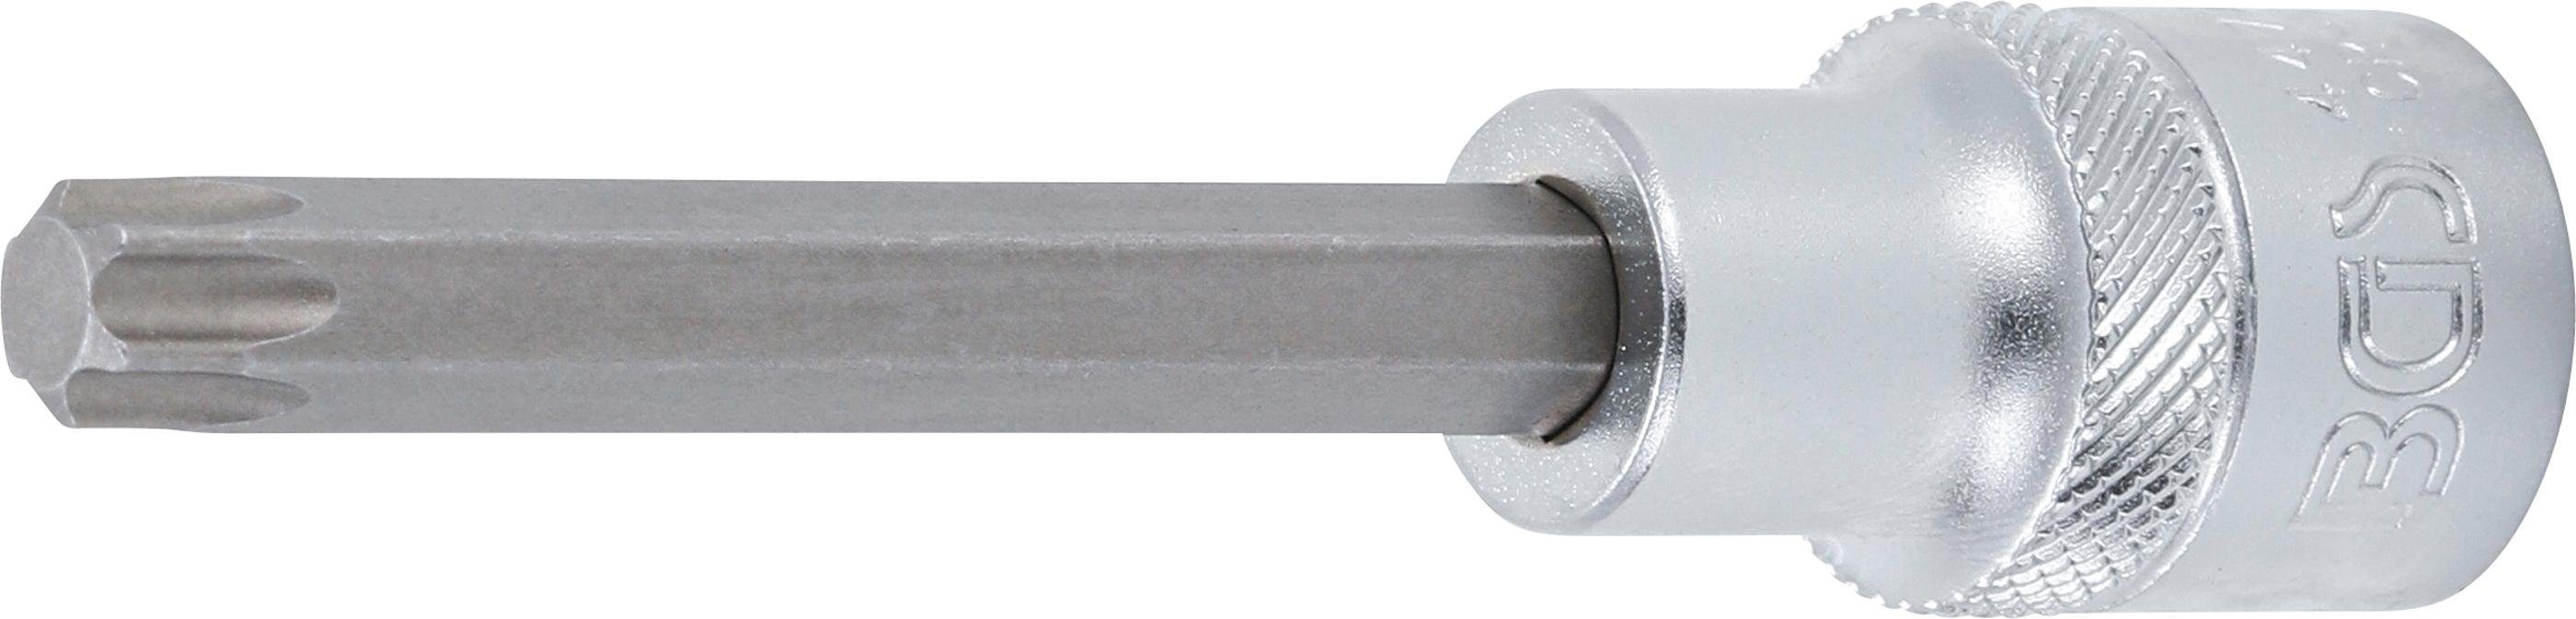 BGS technic Bit-Schraubendreher Bit-Einsatz, Länge 100 mm, Antrieb Innenvierkant 12,5 mm (1/2), T-Profil (für Torx) T50 | Schraubendreher